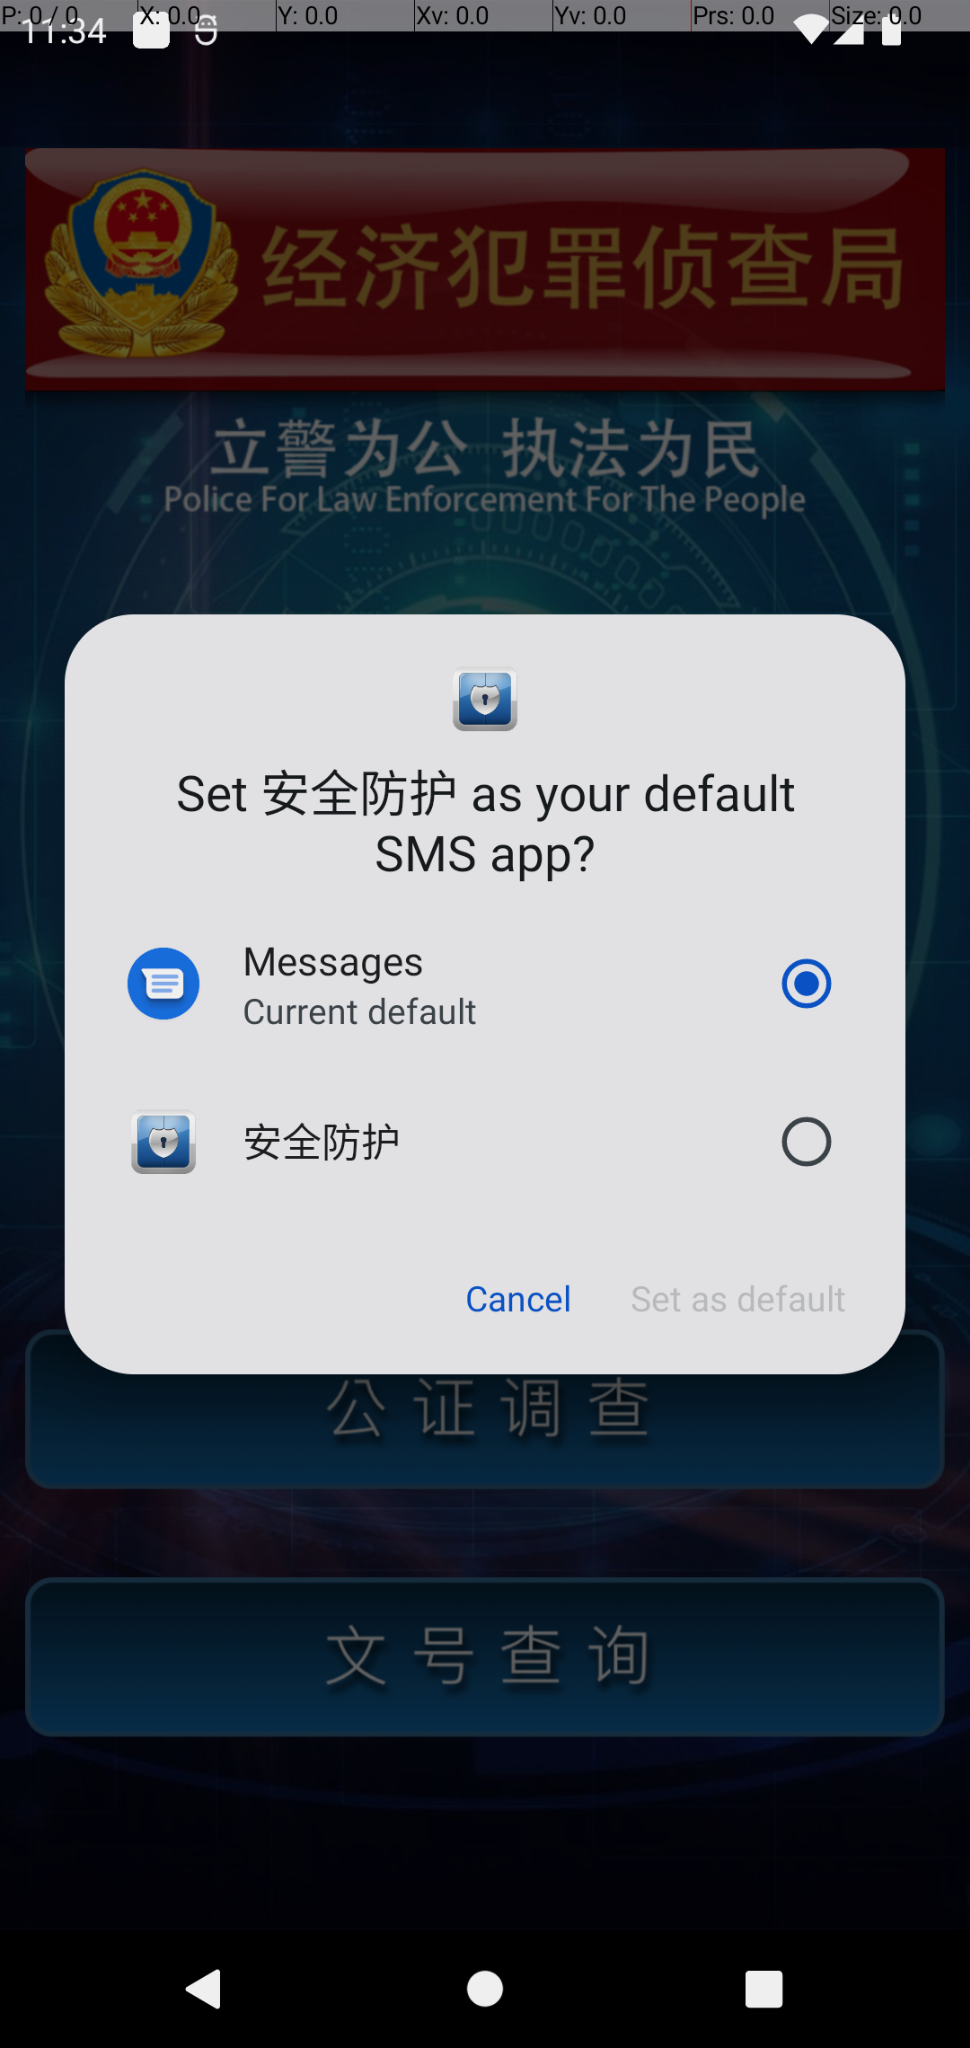 画像 2 は Android 携帯電話のスクリーンショットです。中国語まじりの英語でポップアップ通知が表示されています。ここでは、ユーザーに対し、当該の悪意のあるアプリケーションをデフォルトの SMS アプリに設定するよう求めています。 